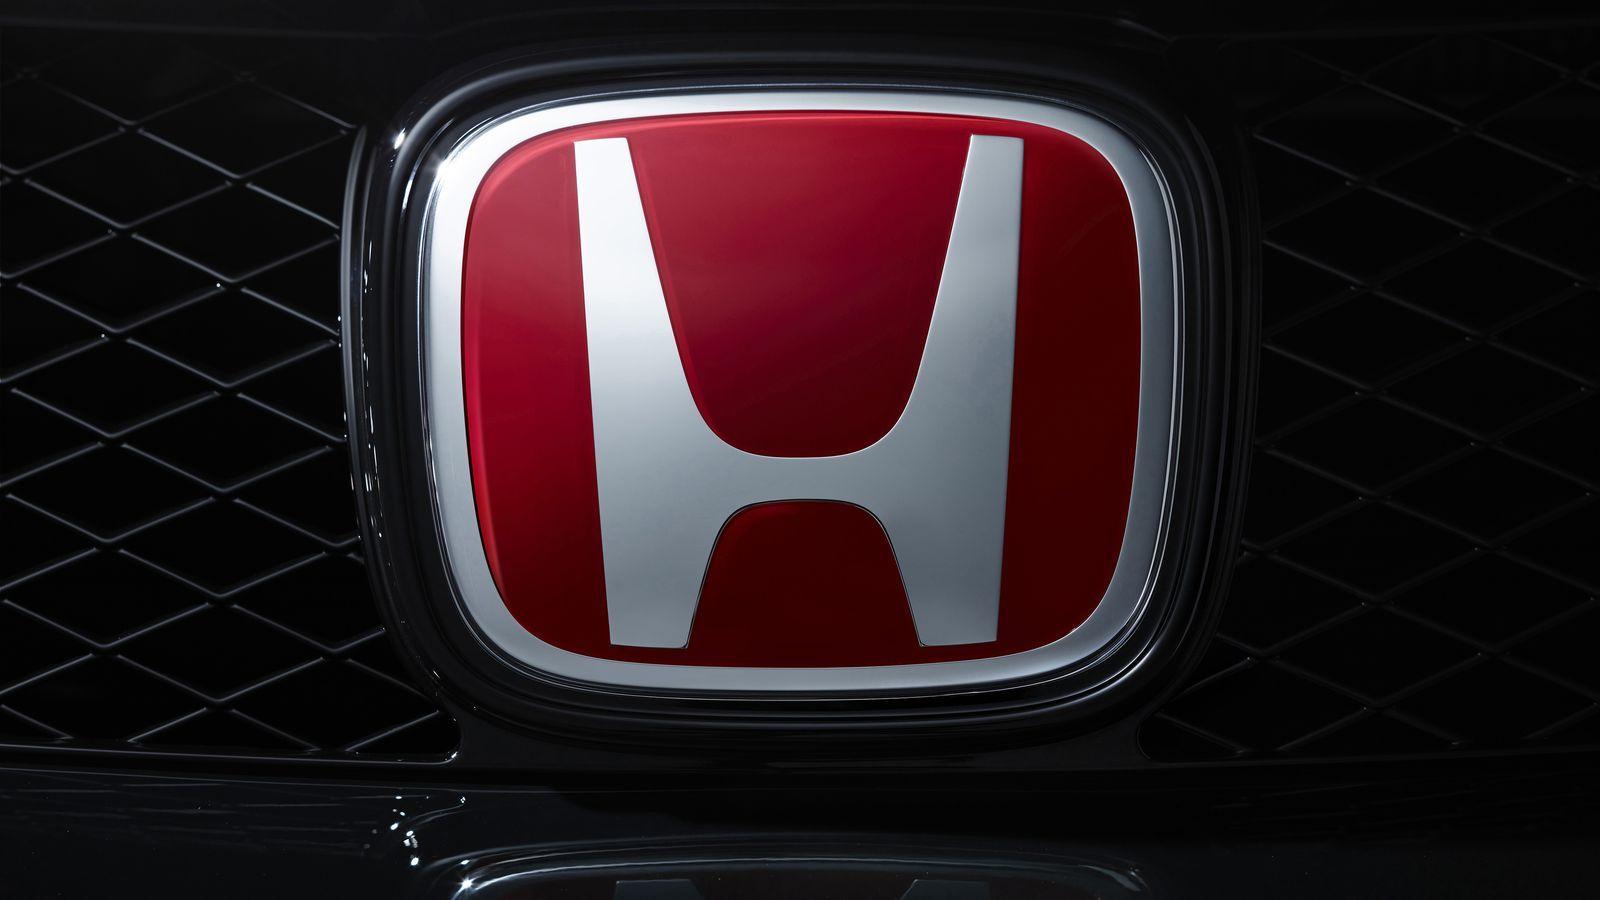 Red Honda Emblem Wallpaper